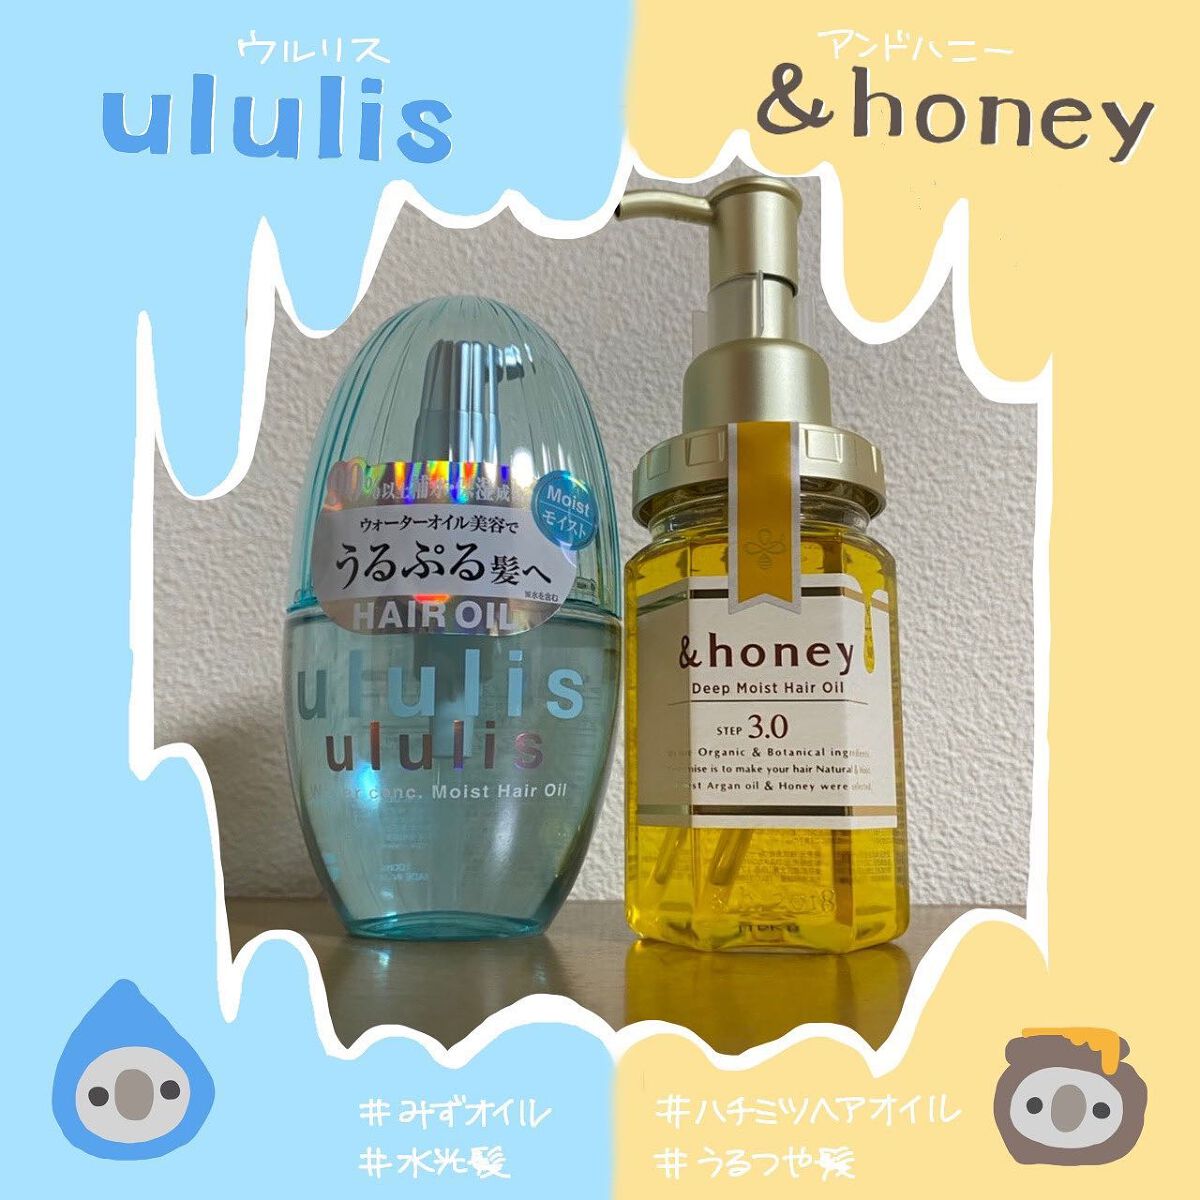 日本最級 honey ululis ヘアオイル